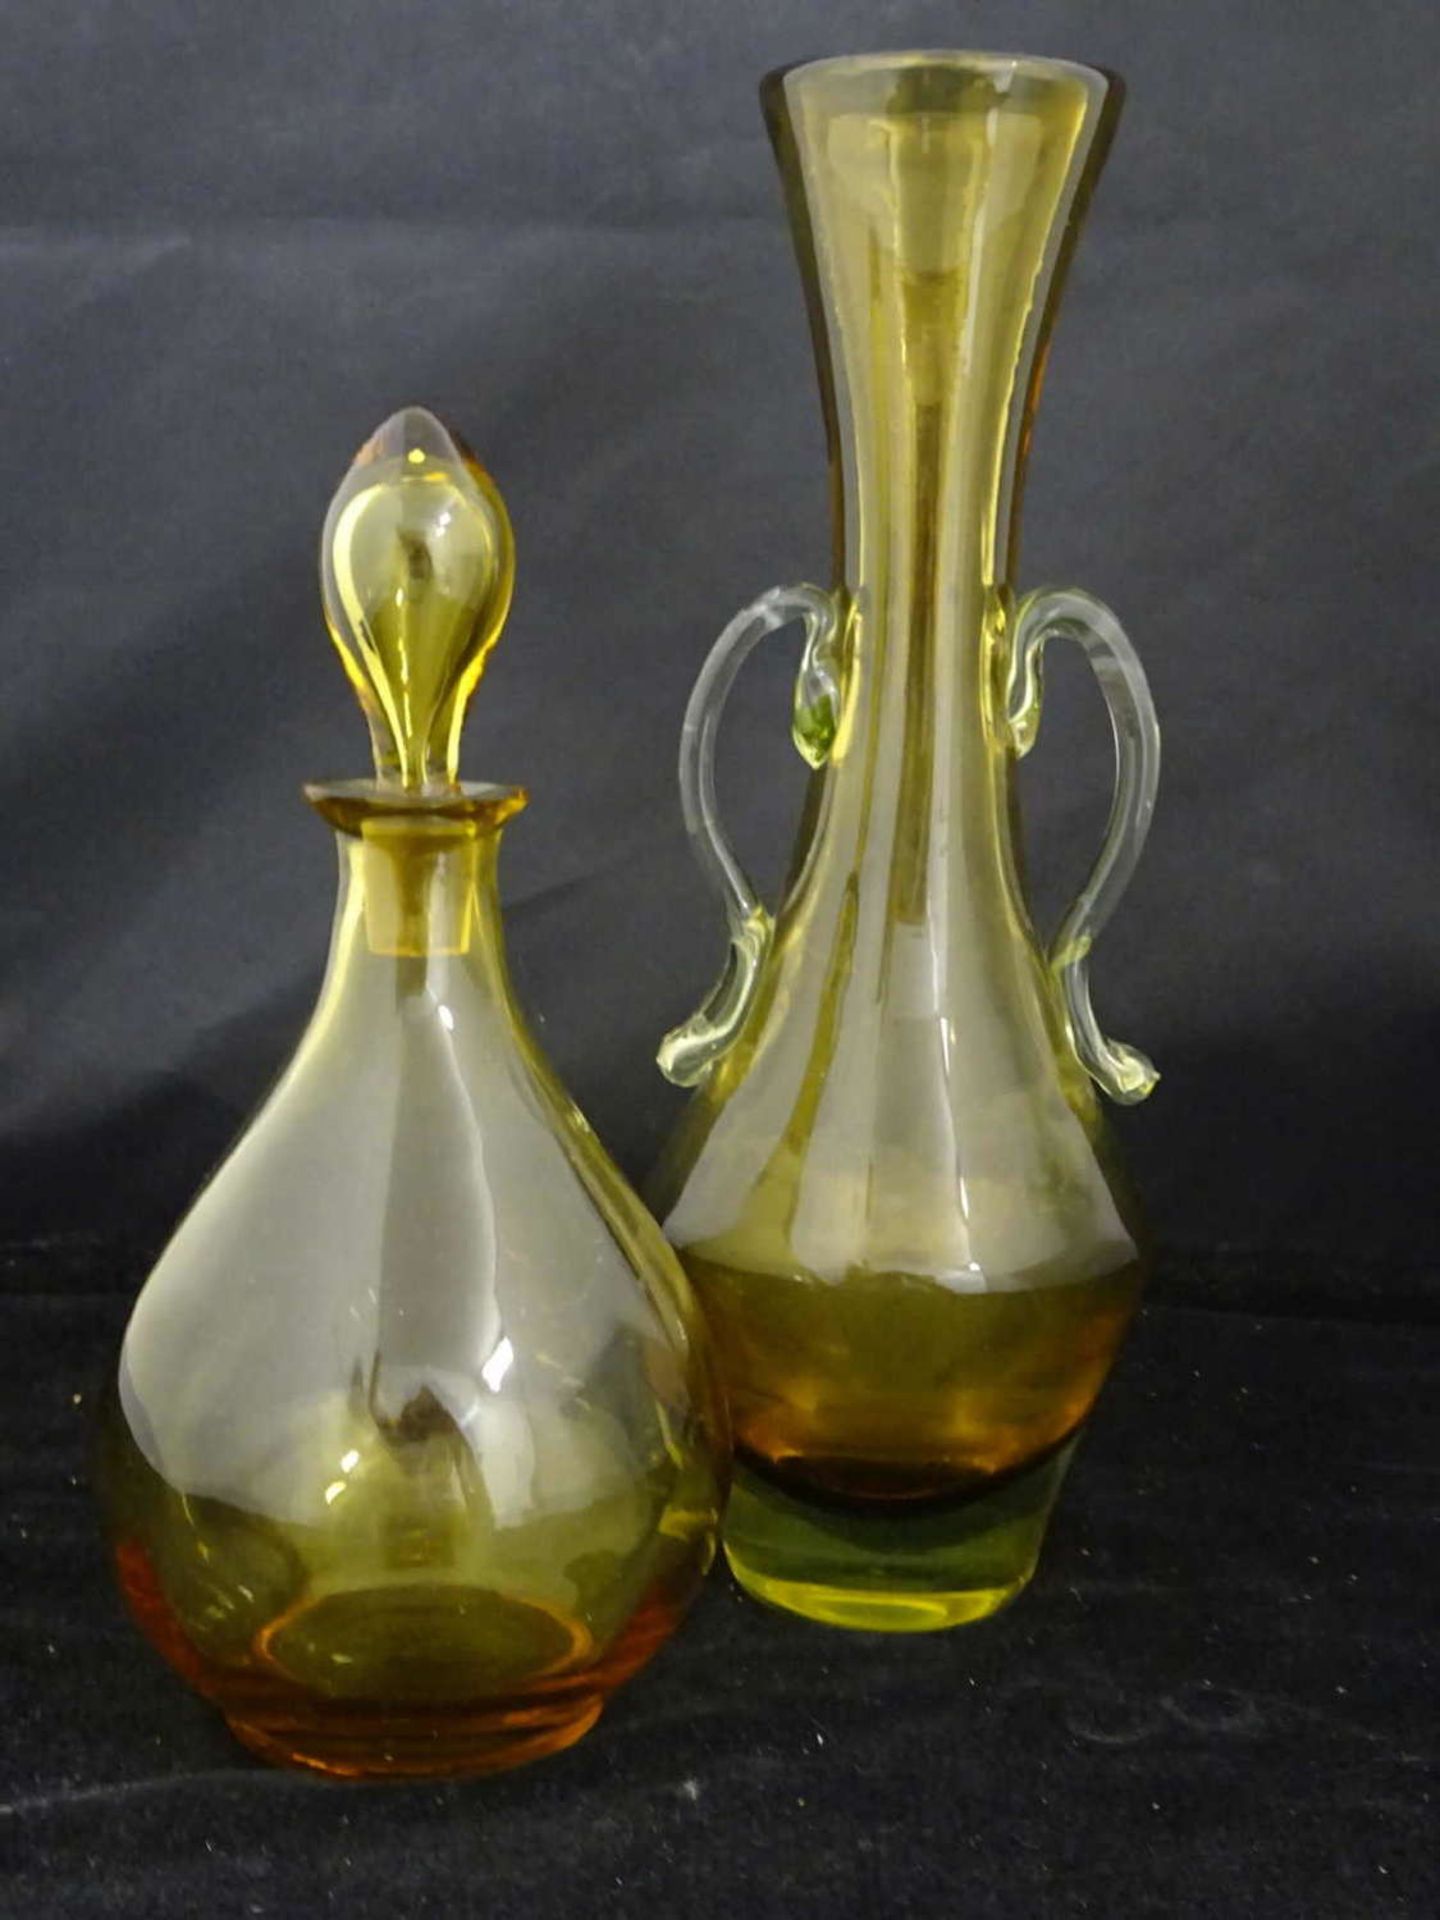 2 Teile Muranoglas bestehend aus 1 Vase, höhe ca. 25 cm sowie 1 kleine Stöpselkaraffe, höhe ca. 18